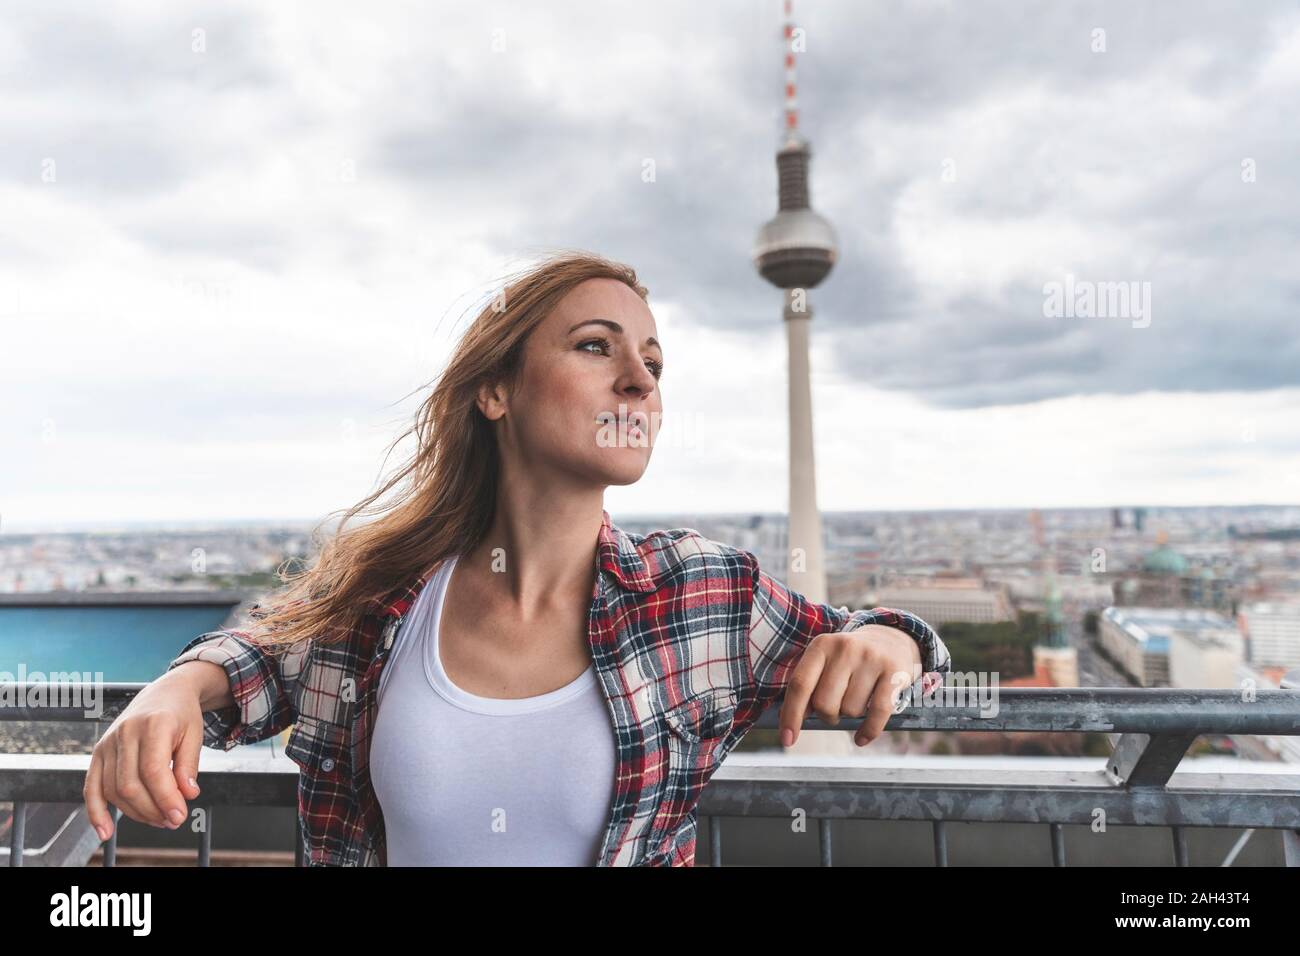 La donna in una terrazza di osservazione con la torre della televisione in background, Berlino, Germania Foto Stock